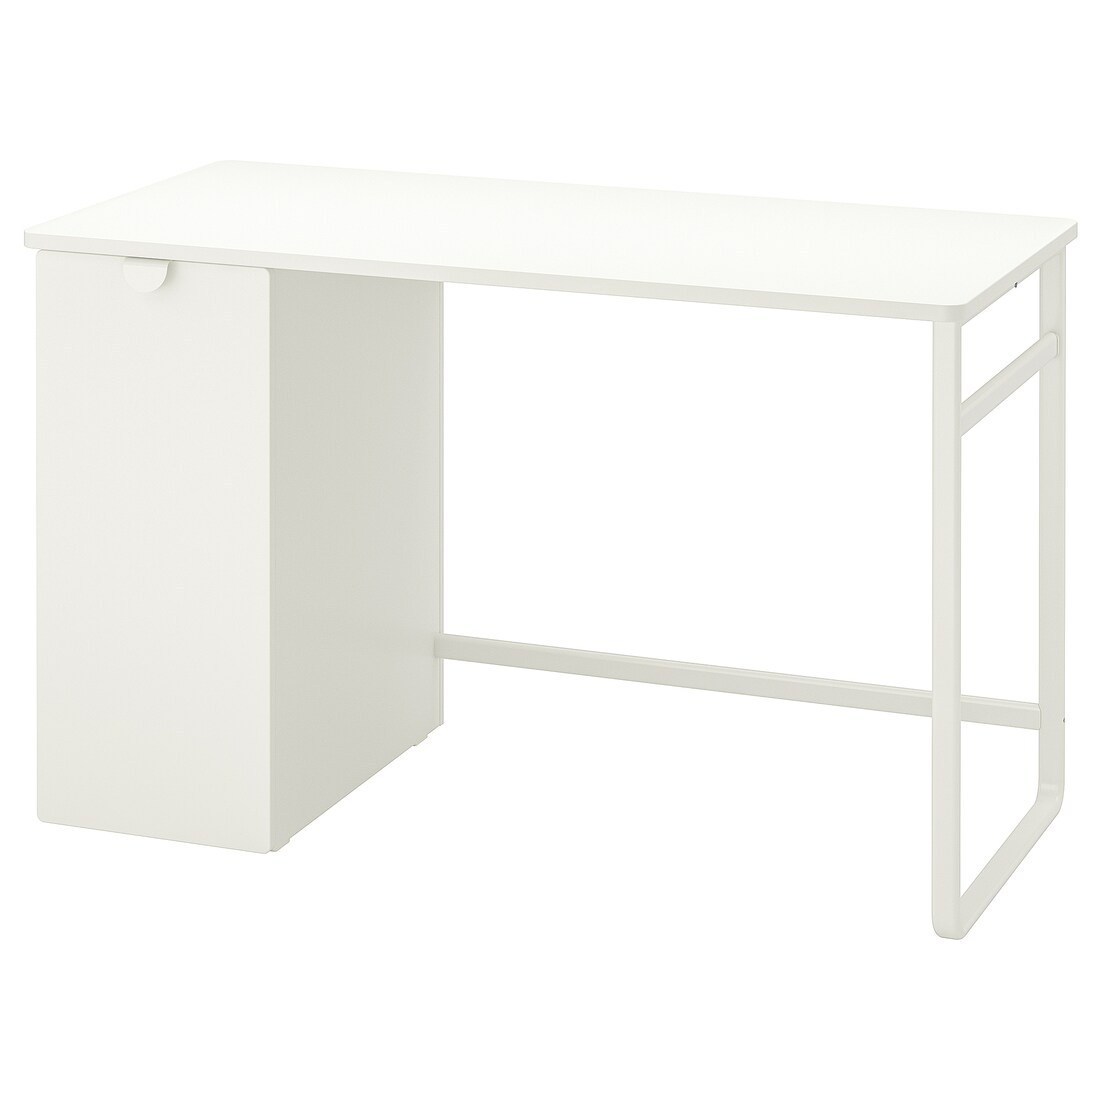 LÄRANDE Рабочий стол с выдвижным шкафом, белый, 120х58 см